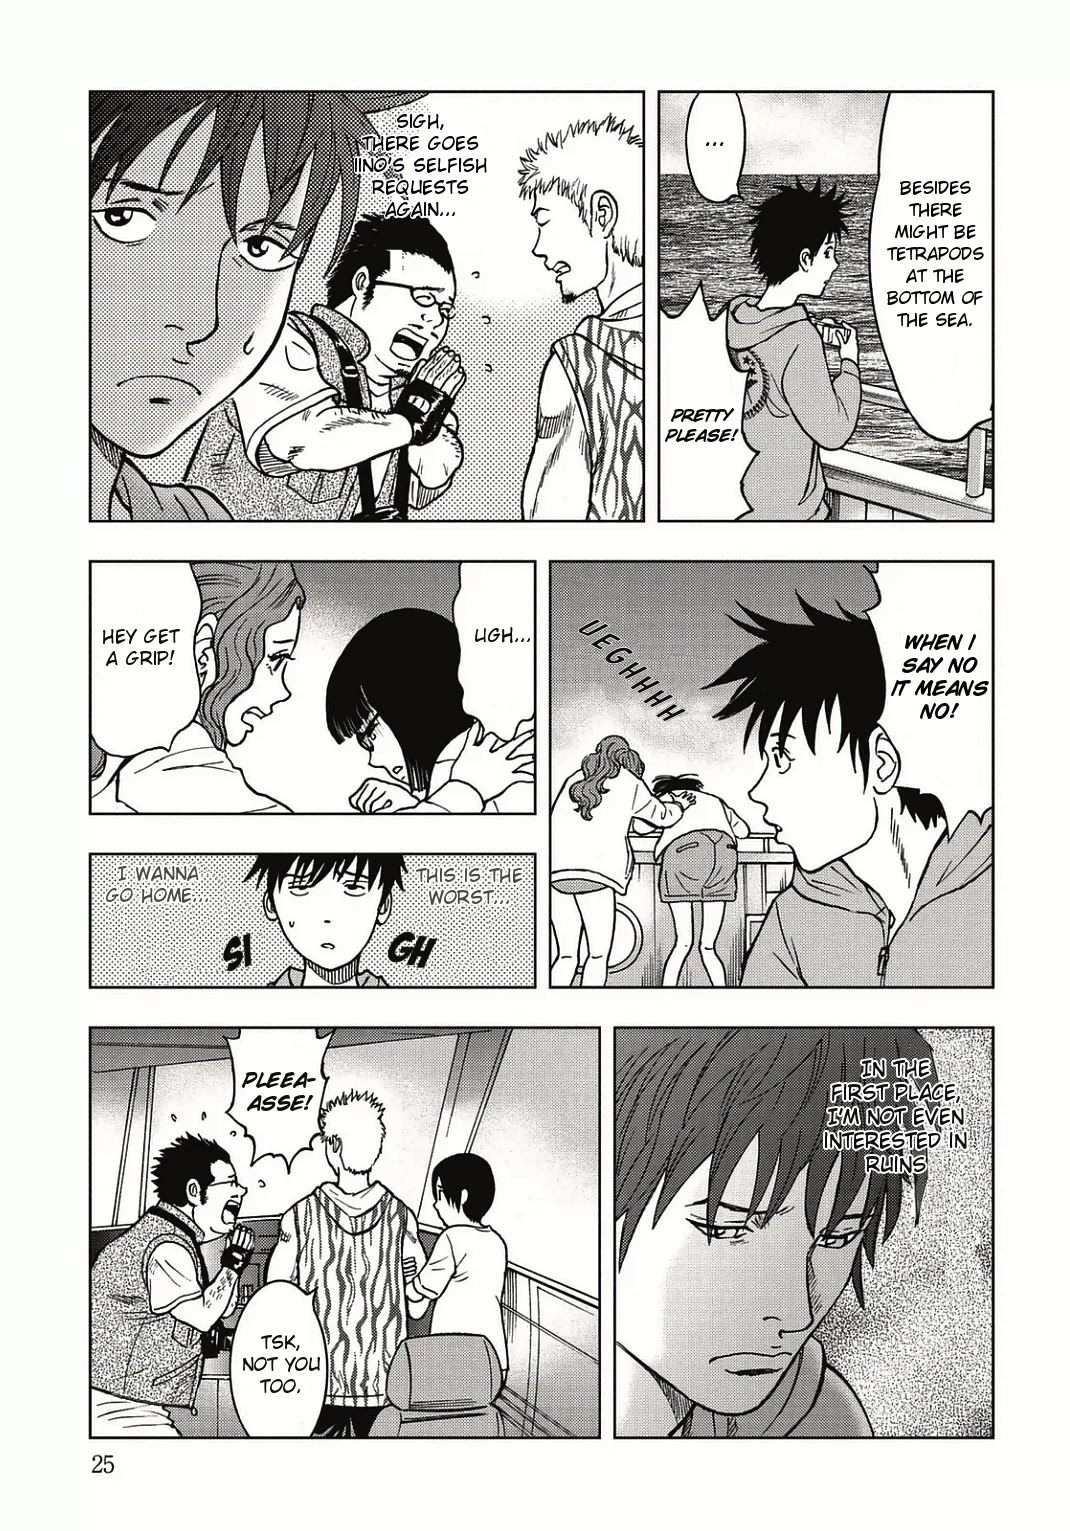 Kichikujima - 1 page 26